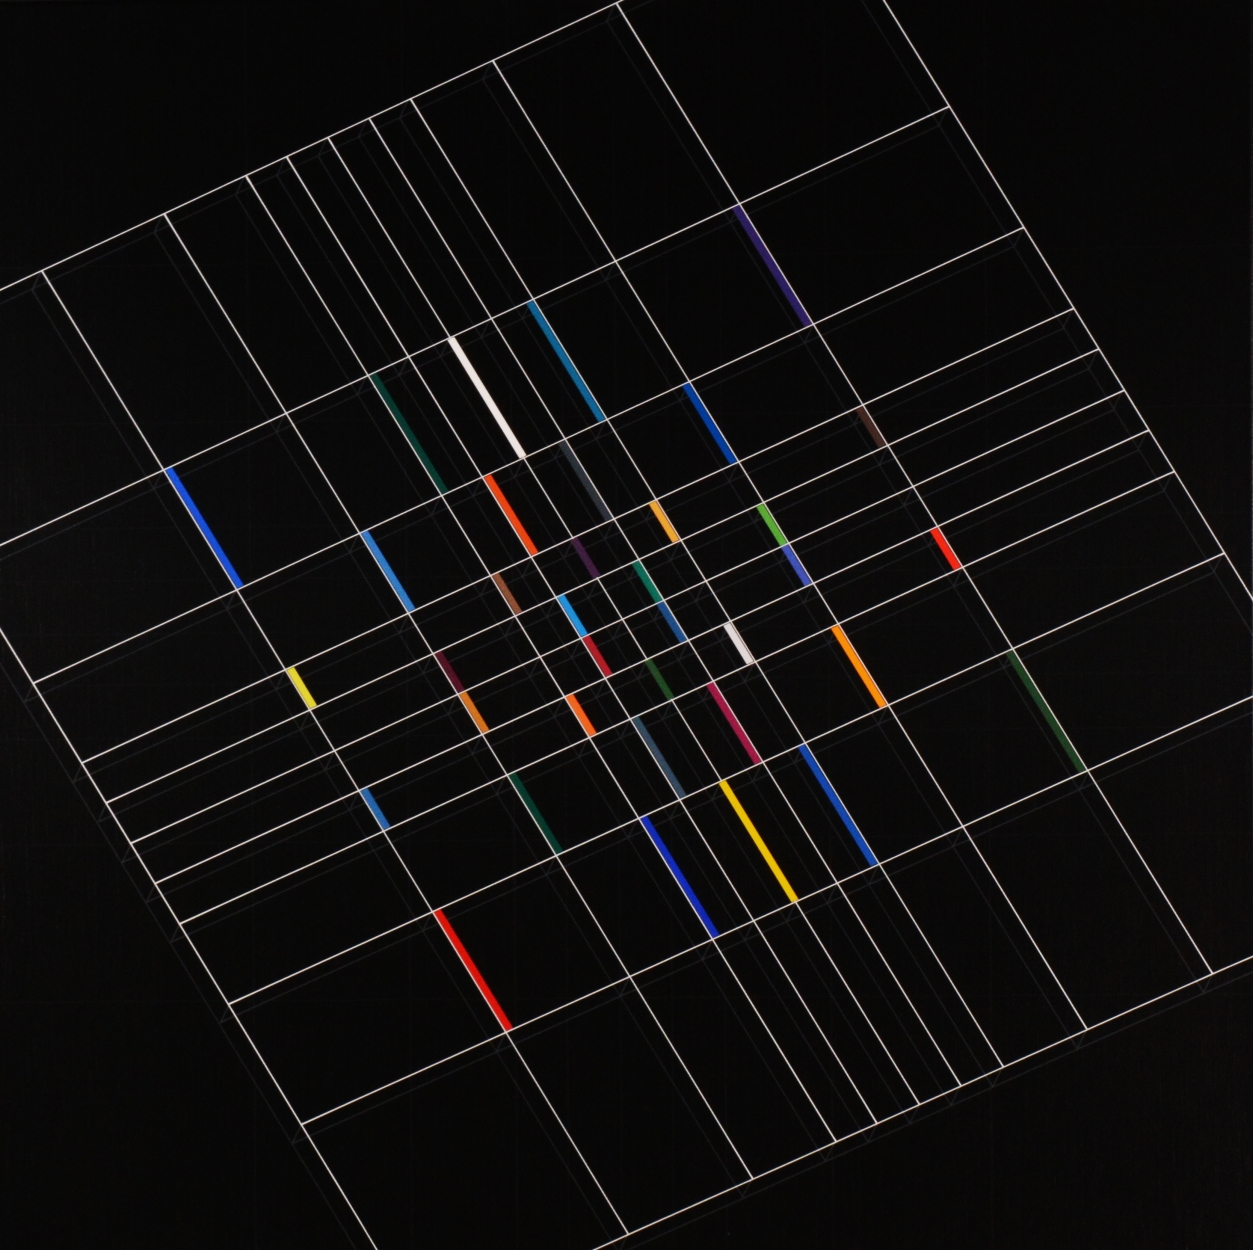  Ottó László: Fibonacci-sequence-space, 2020